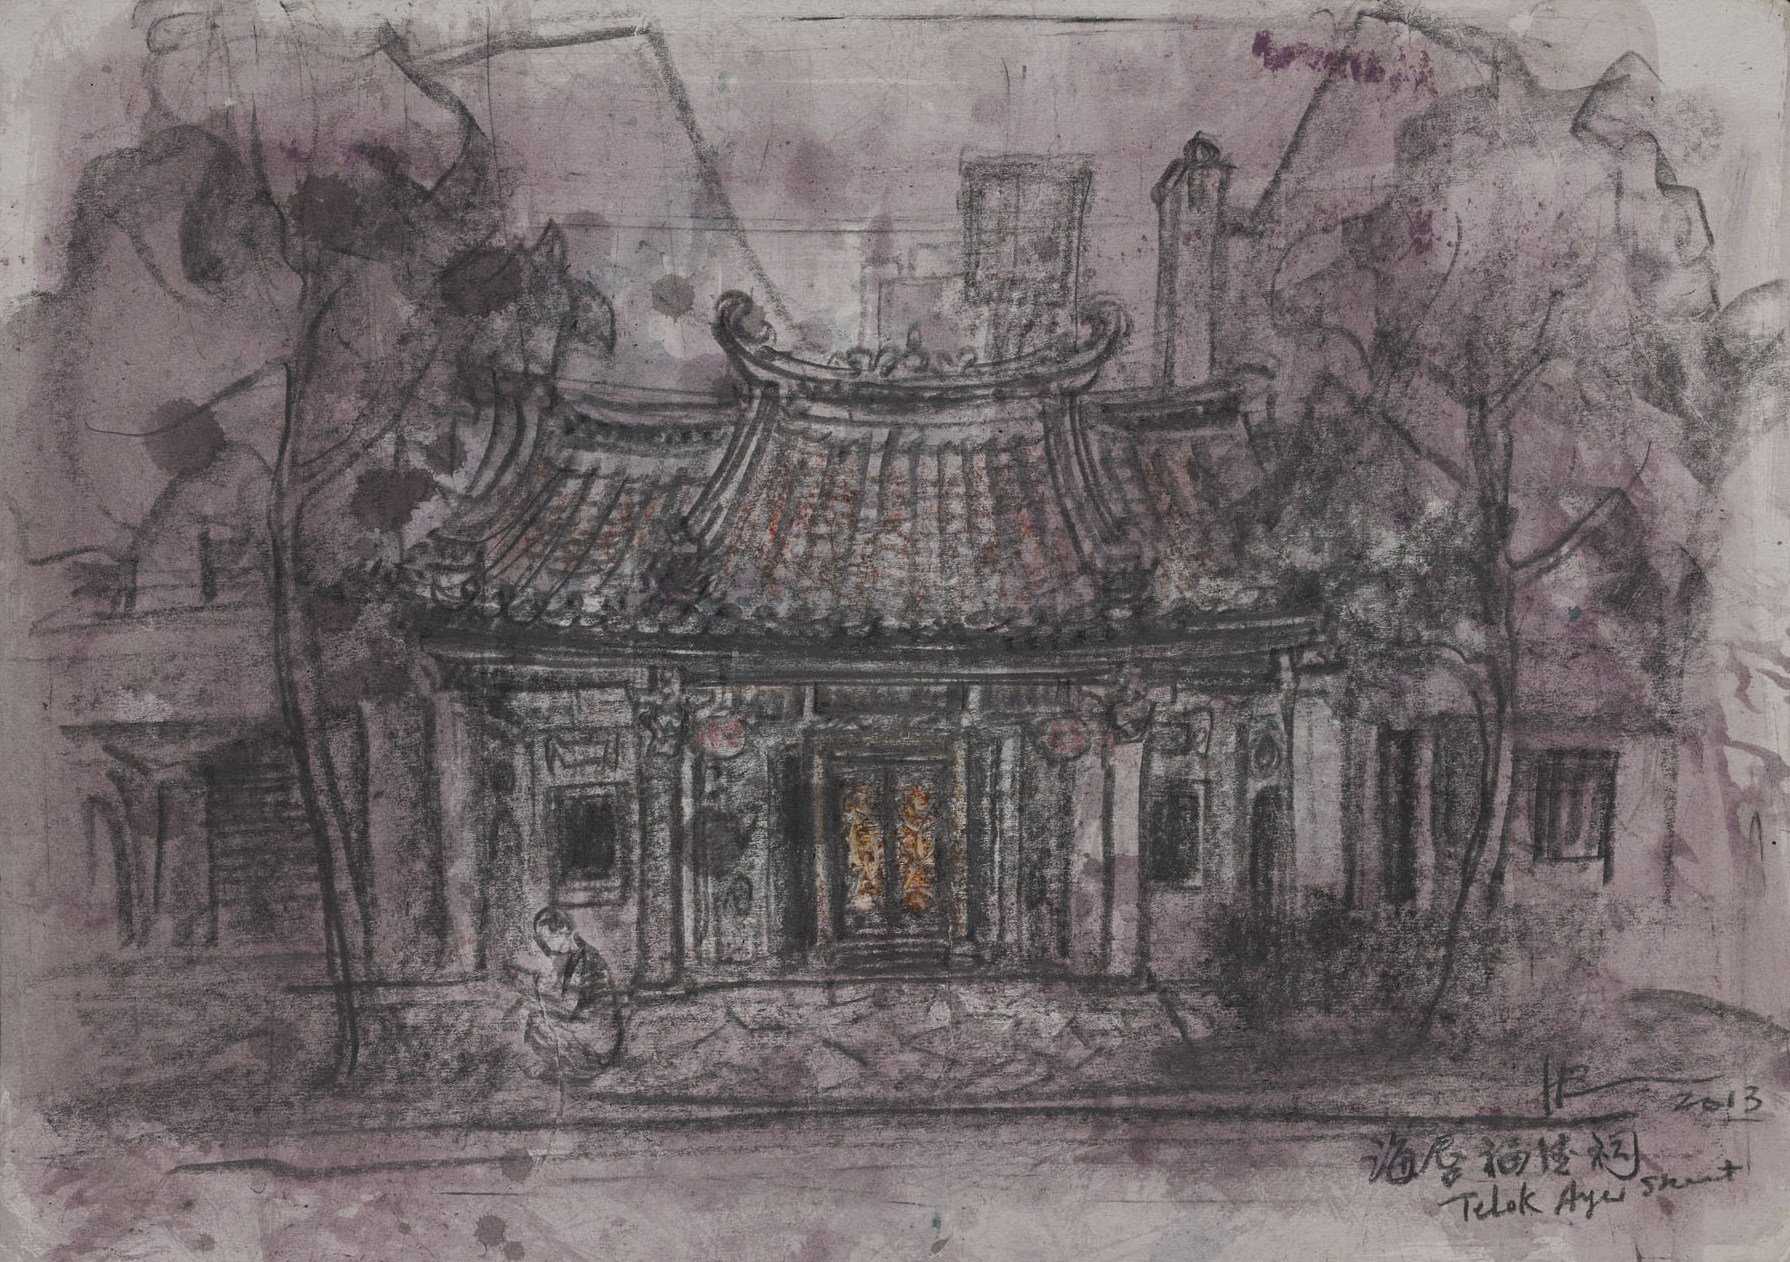 Fuk Tak Chi Temple